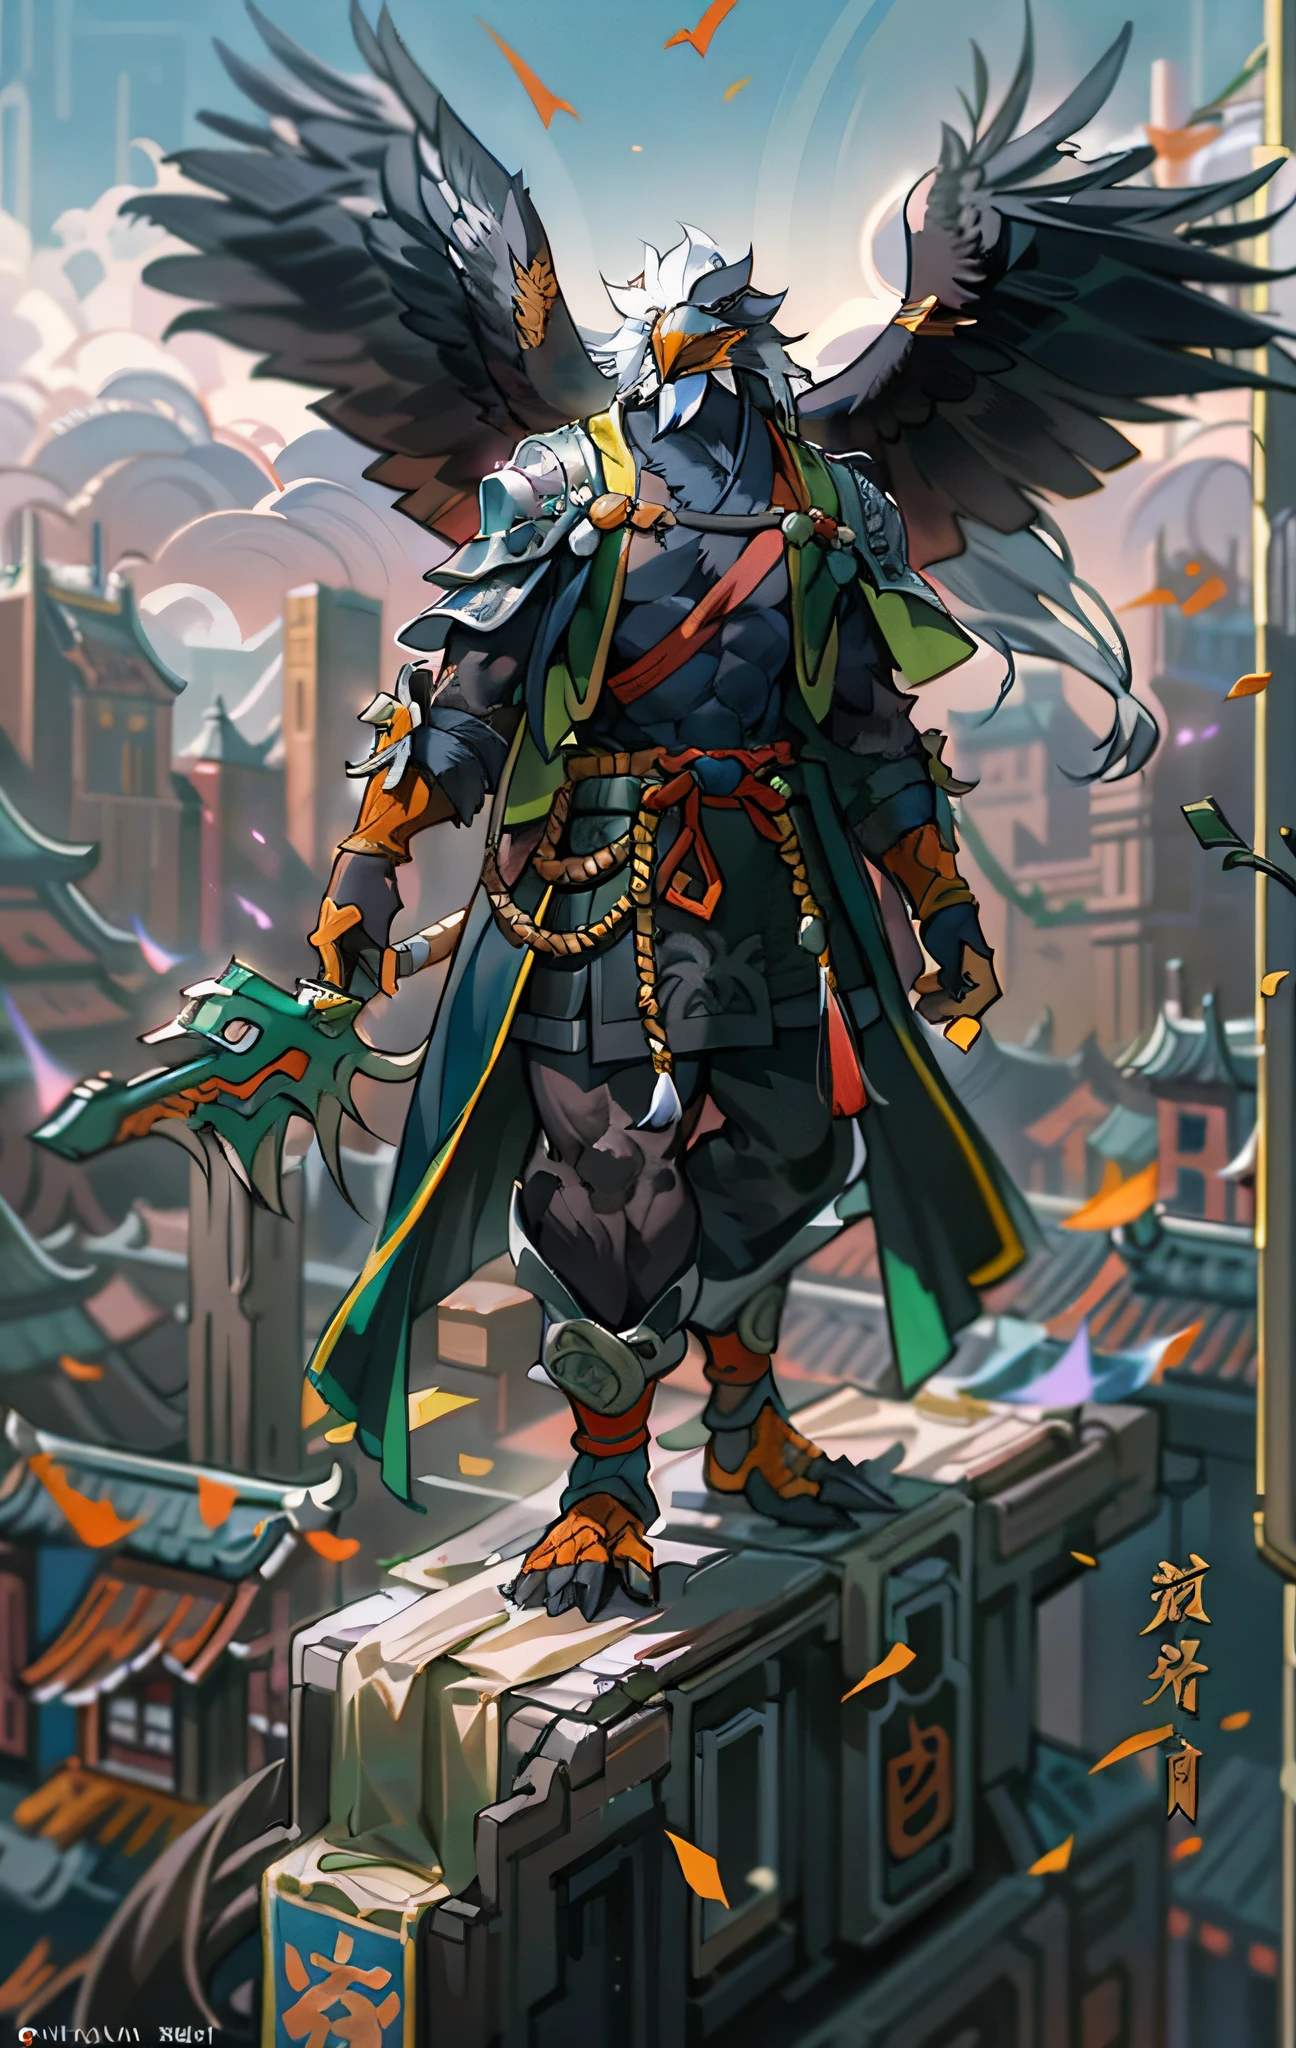 Assassins d&#39;aigle, Tout le corps comme，Gros plan d&#39;Eagle Assassin dans la ville, Des yeux déterminés，féroce，Akira dans la mythologie chinoise, un commerçant degen majestueux et épique, bian lian, par Yang J., Guerrier chinois, Aigle assassin anthropomorphe, son Goku, cgsociety et fenghua zhong, inspiré par Li Kan, Guerrier assassin épique, Assassins d&#39;aigle, Cape noire en lambeaux，armure，PEINTURE CORPS ENTIER DEBOUT，cadre fantastique, Notion de personnage, art de personnage, Portrait de personnage, dessin animé, Meilleure qualité, meilleure résolution, 4k, Vif colors, Vif, Détails élevés, meilleur détail, pose confiante, extraverti, regarde d&#39;en bas,